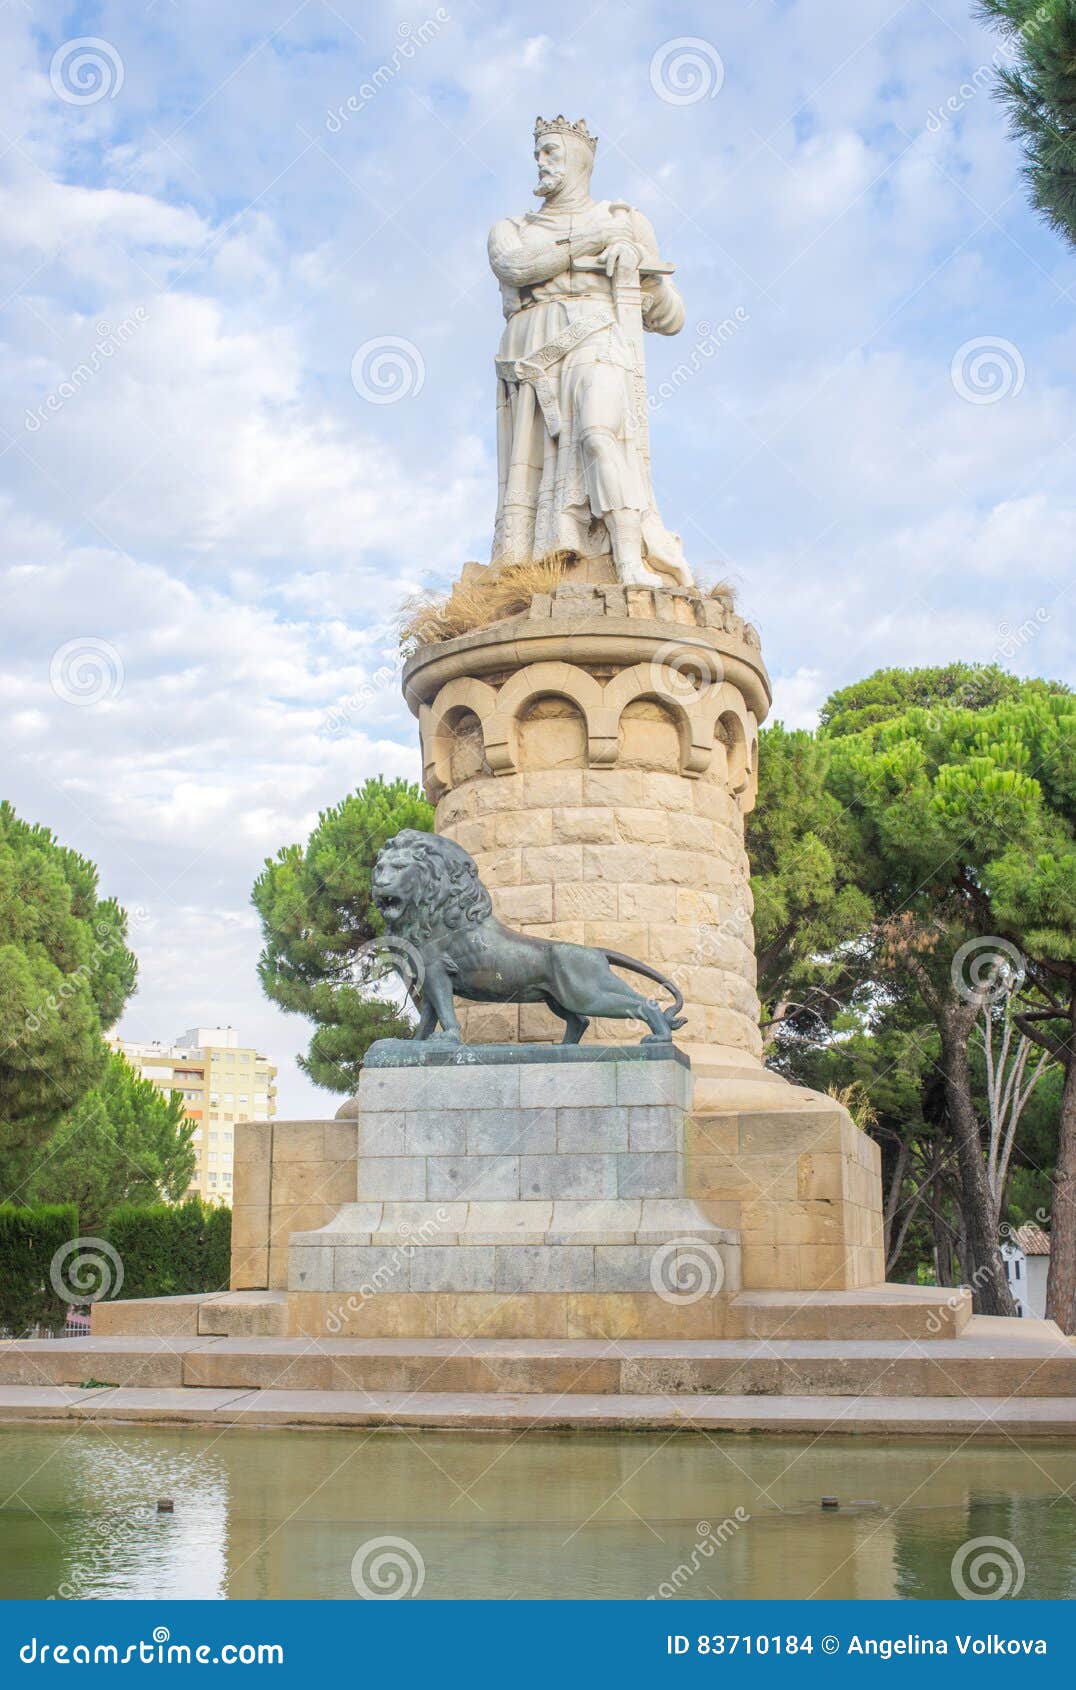 the statue of el batallador in the parque grande